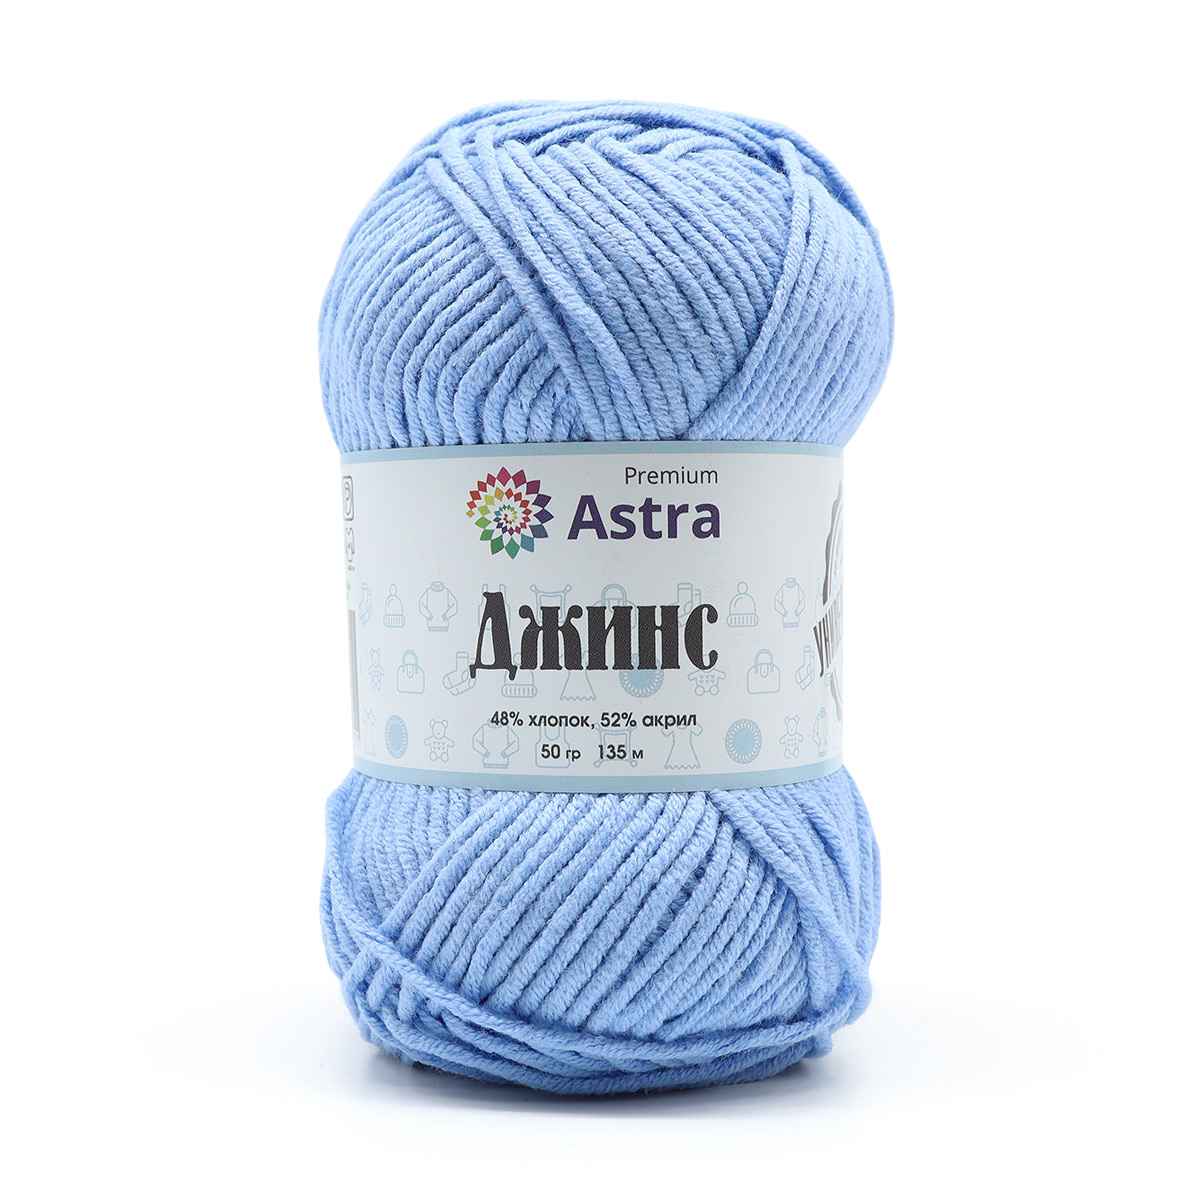 Пряжа для вязания Astra Premium джинс для повседневной одежды акрил хлопок 50 гр 135 м 550 светло-голубой 4 мотка - фото 7